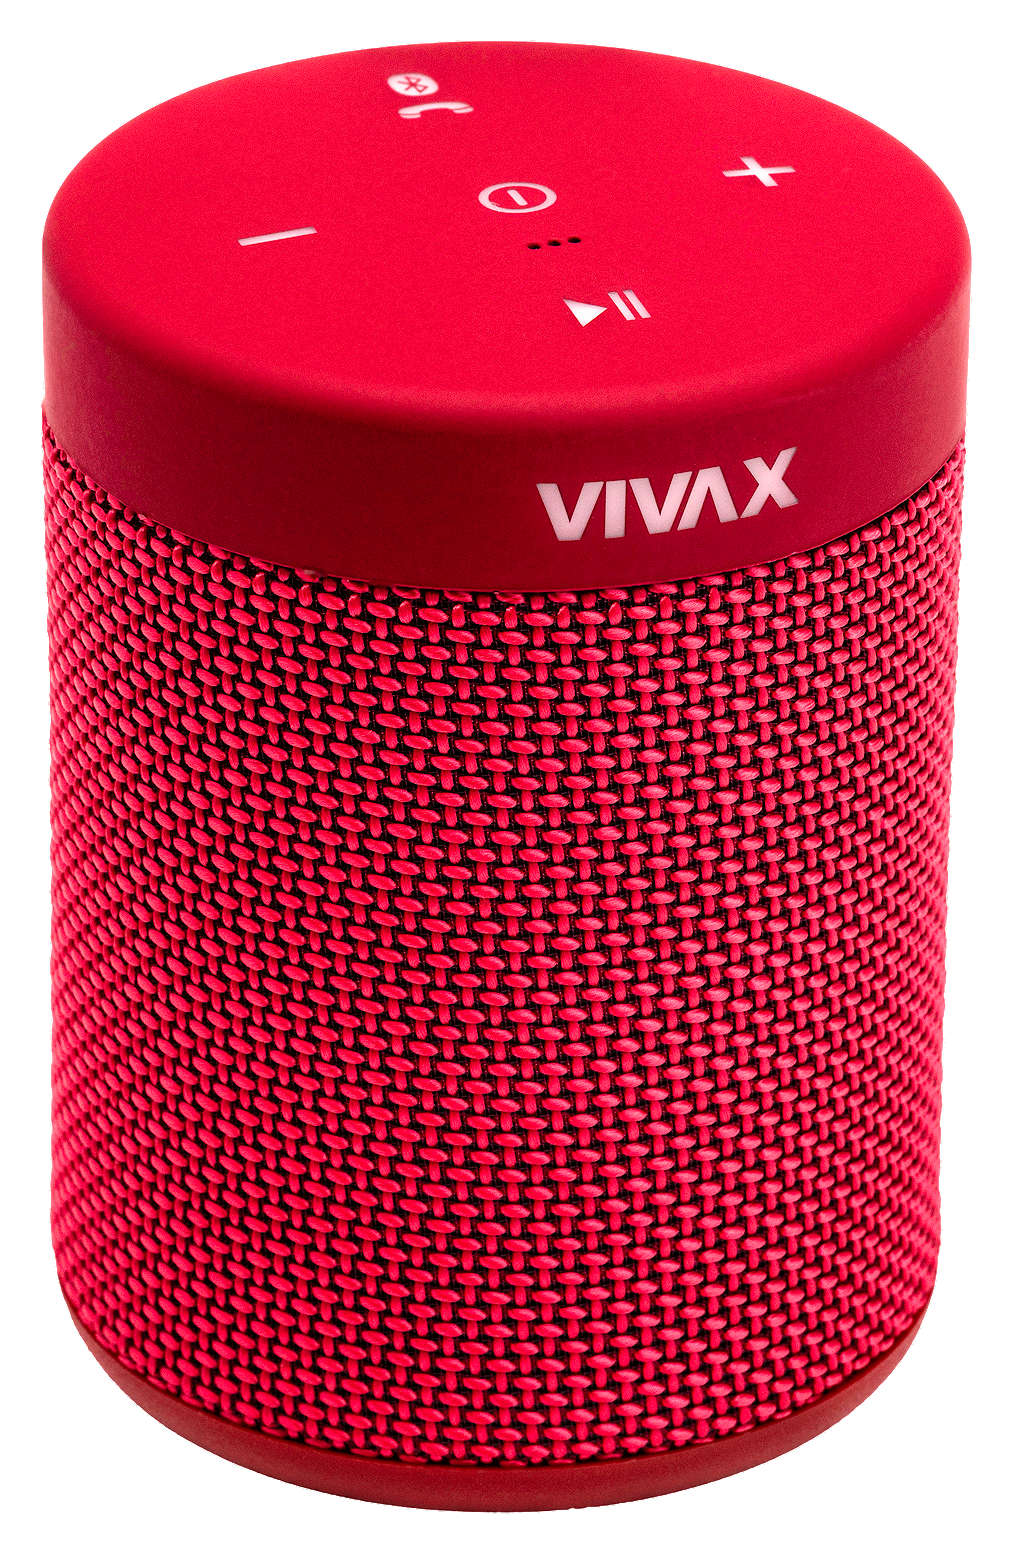 Fotografija ponude VIVAX Bluetooth zvučnik BS-50